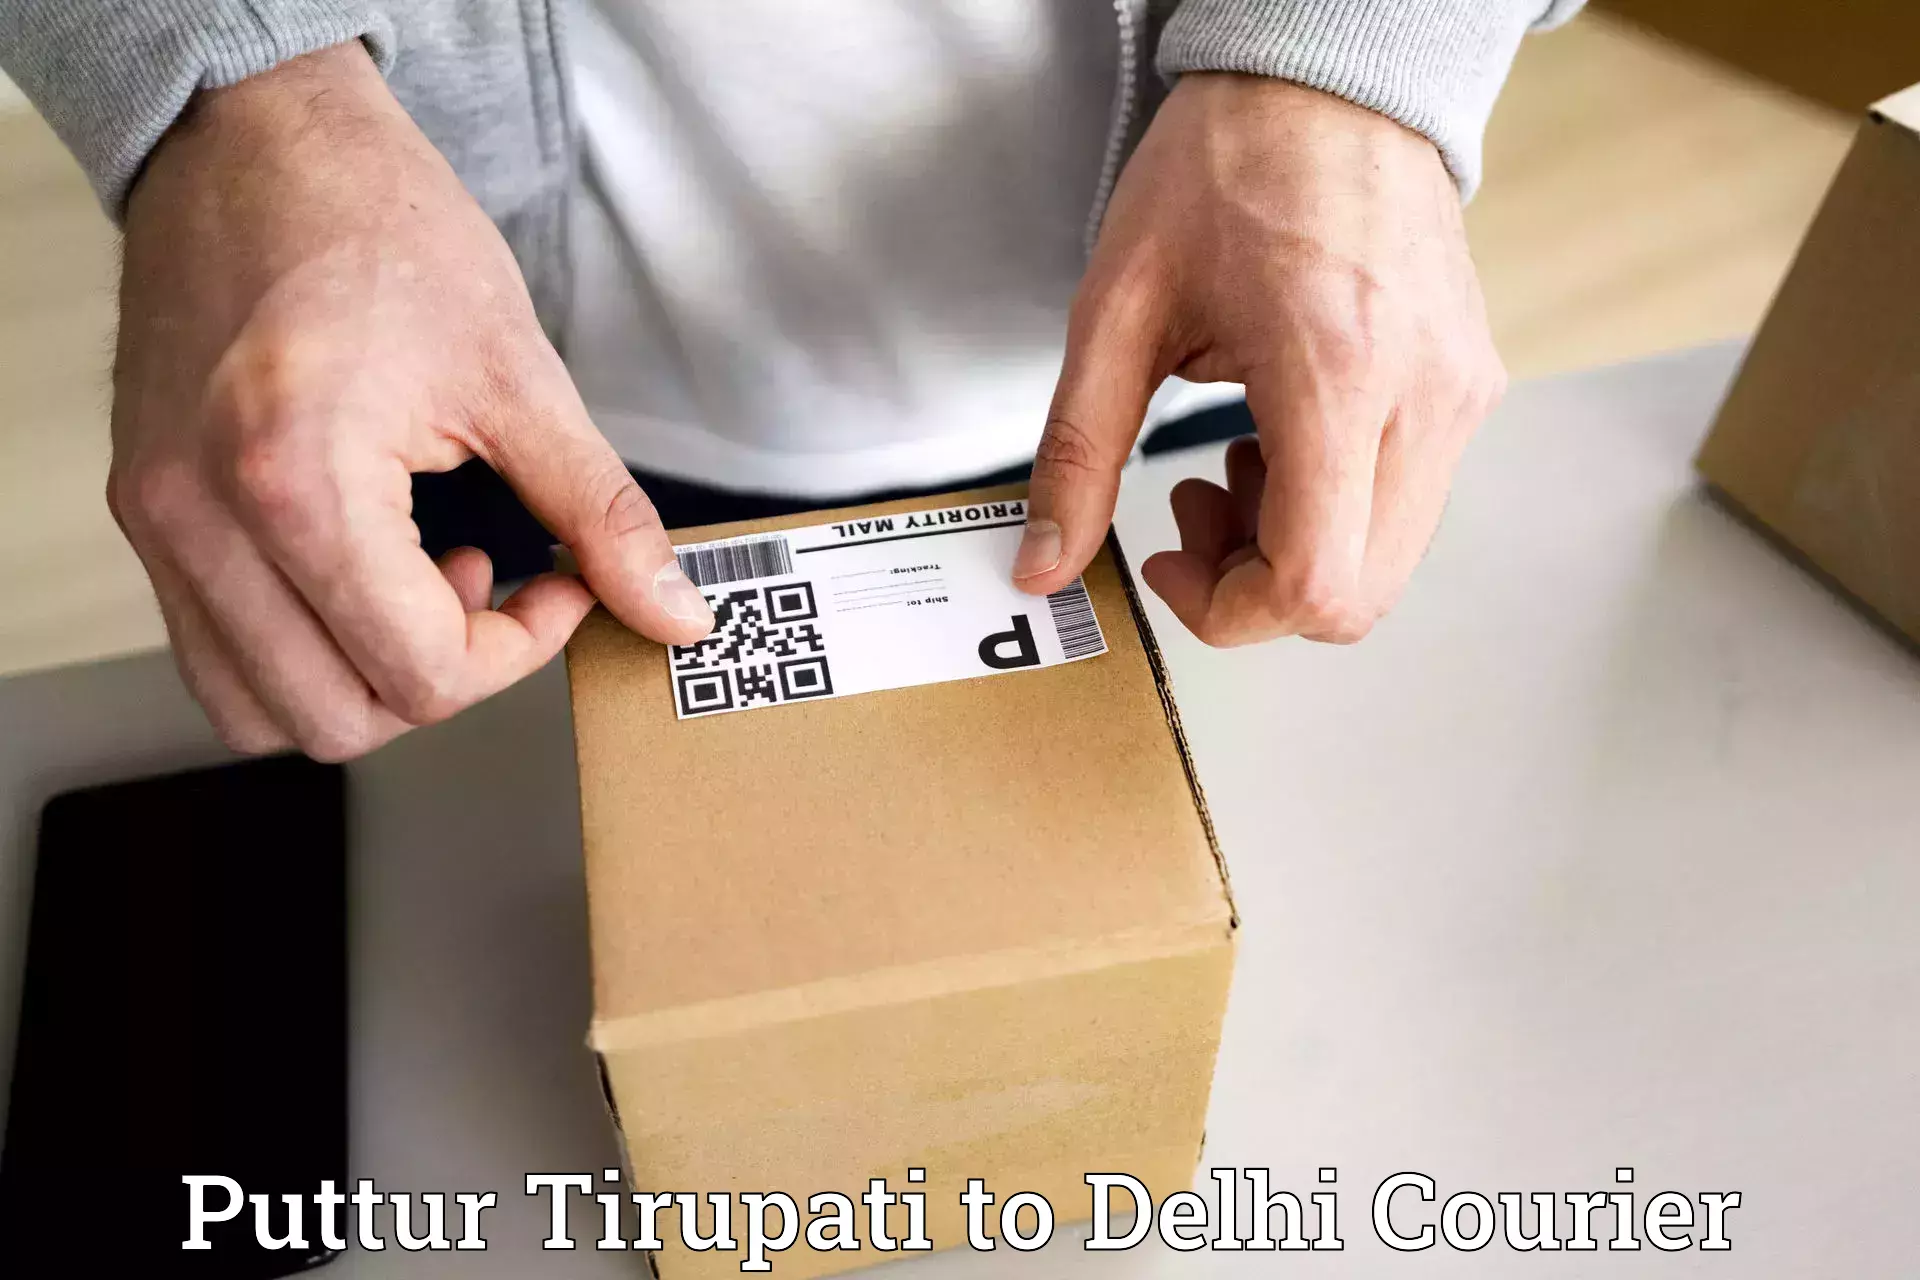 Affordable parcel service Puttur Tirupati to NCR